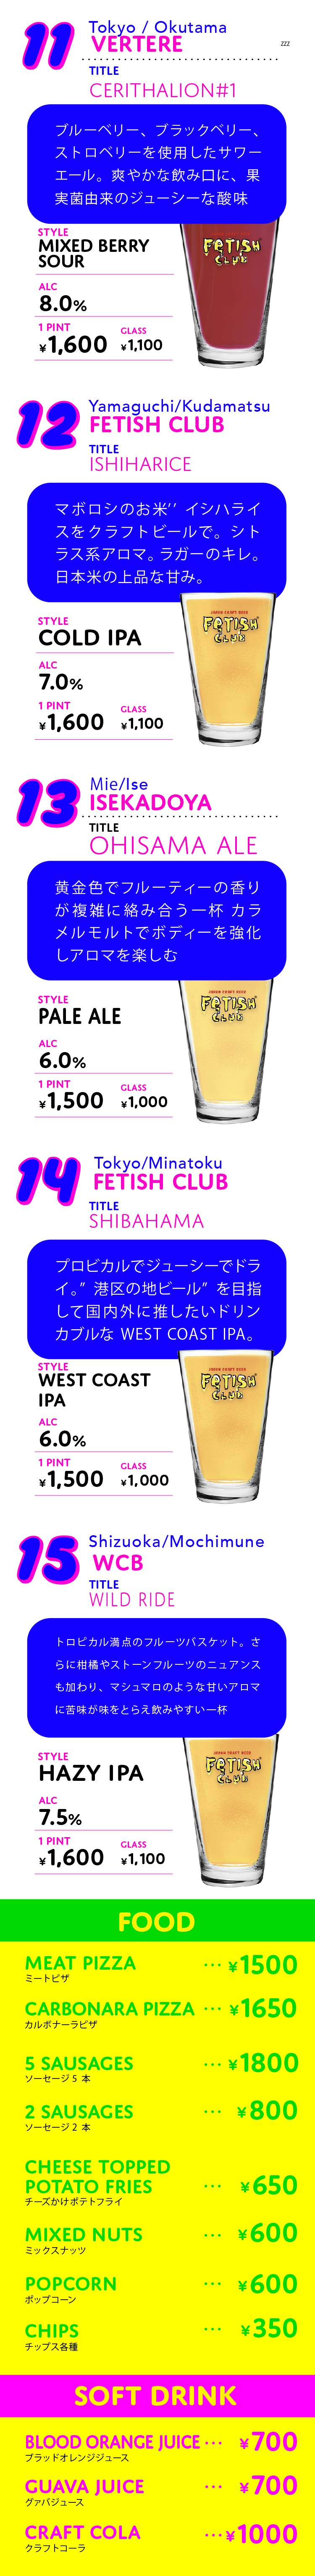 fetis club beer メニュー